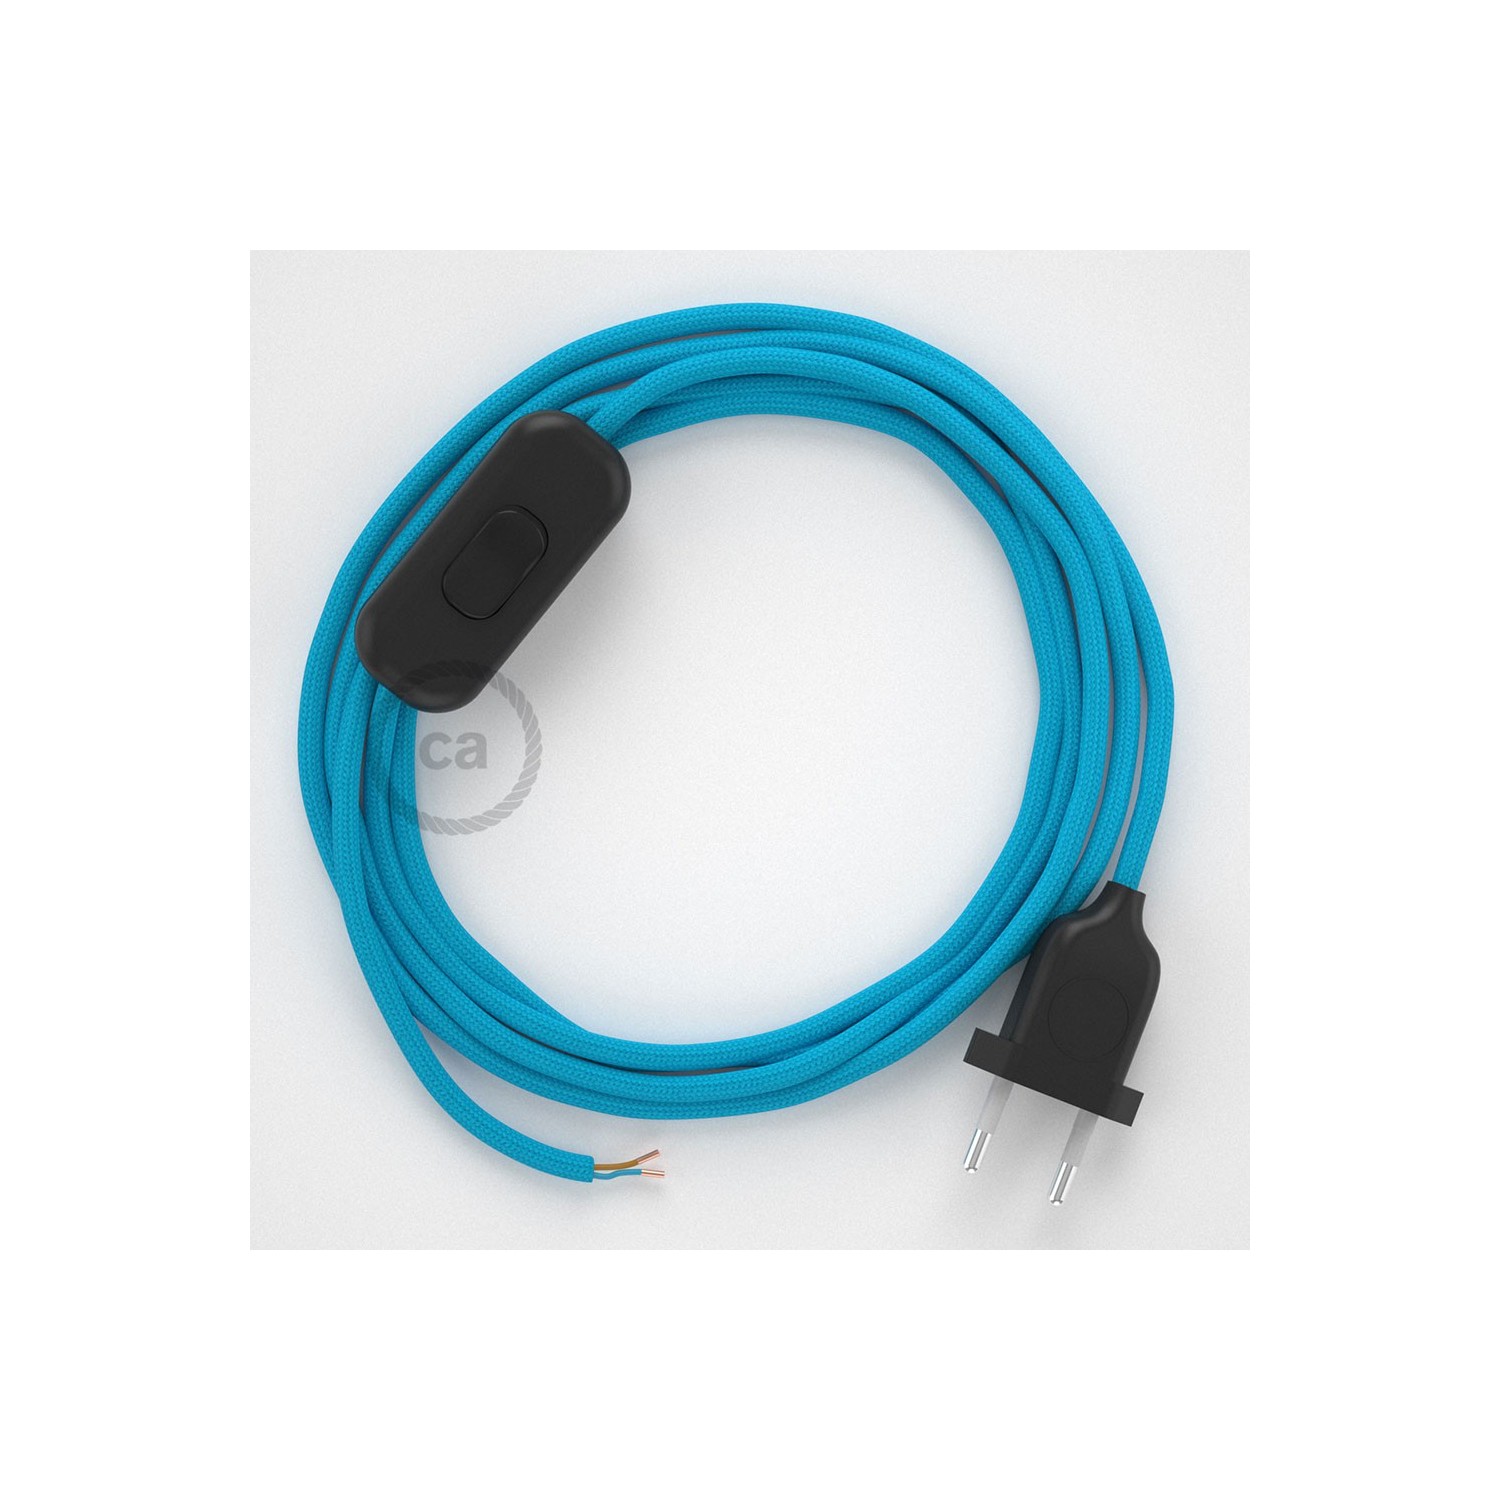 Cableado para lámpara, cable RM11 Efecto Seda Celeste 1,8m. Elige tu el color de la clavija y del interruptor!